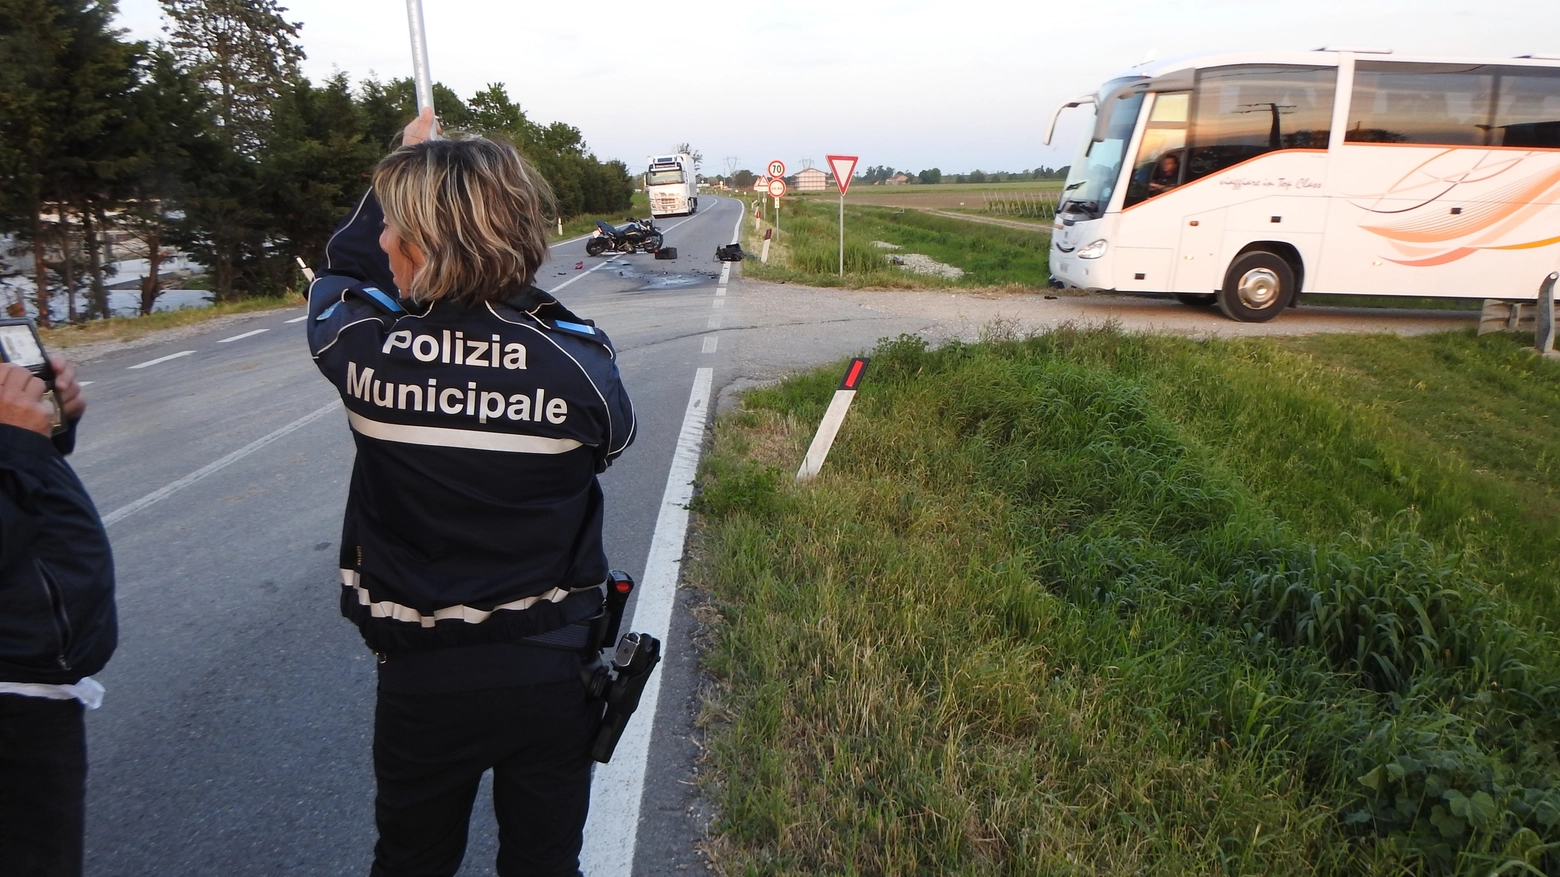 L’incidente nel tardo pomeriggio a Villa Pianta di Alfonsine: l’uomo è stato trasferito in elicottero al Trauma center del Bufalini di Cesena. Illesa la ragazza che guidava la vettura.